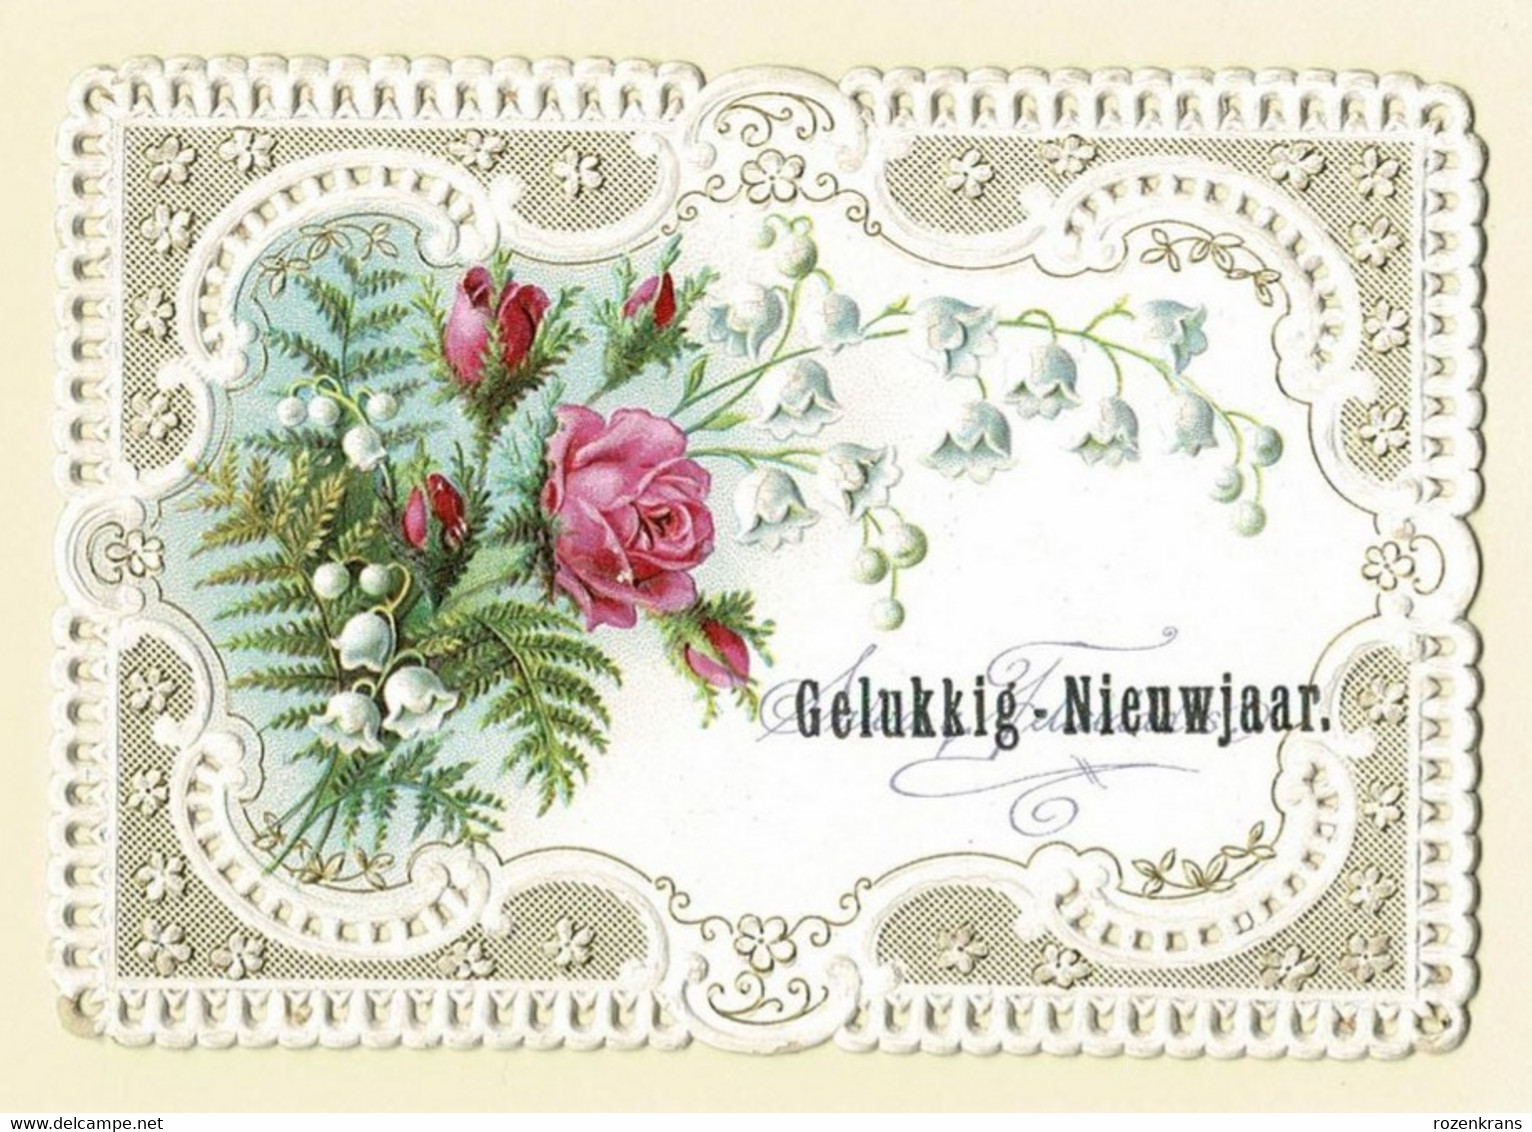 Bonne Annee Gelukkig Nieuwjaar Carte Dentellee Gaufree Embossed Canivet Fleurs Flowers Fam Mutsaers Tilburg - Fleurs